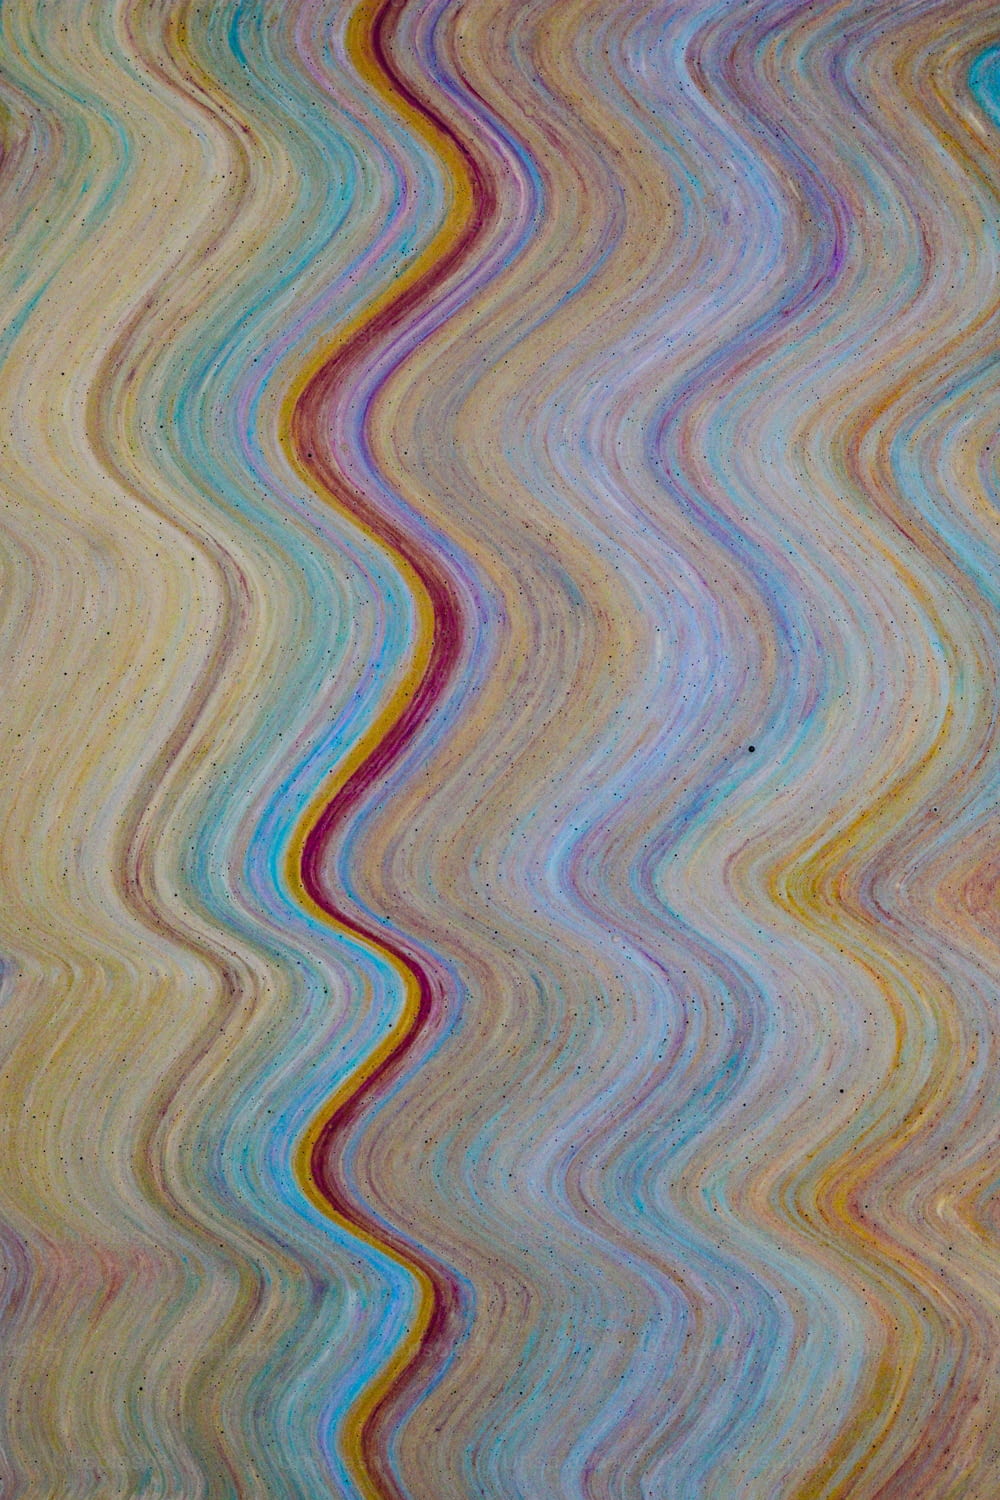 In diesem Bild ist ein mehrfarbiges Wellenmuster dargestellt